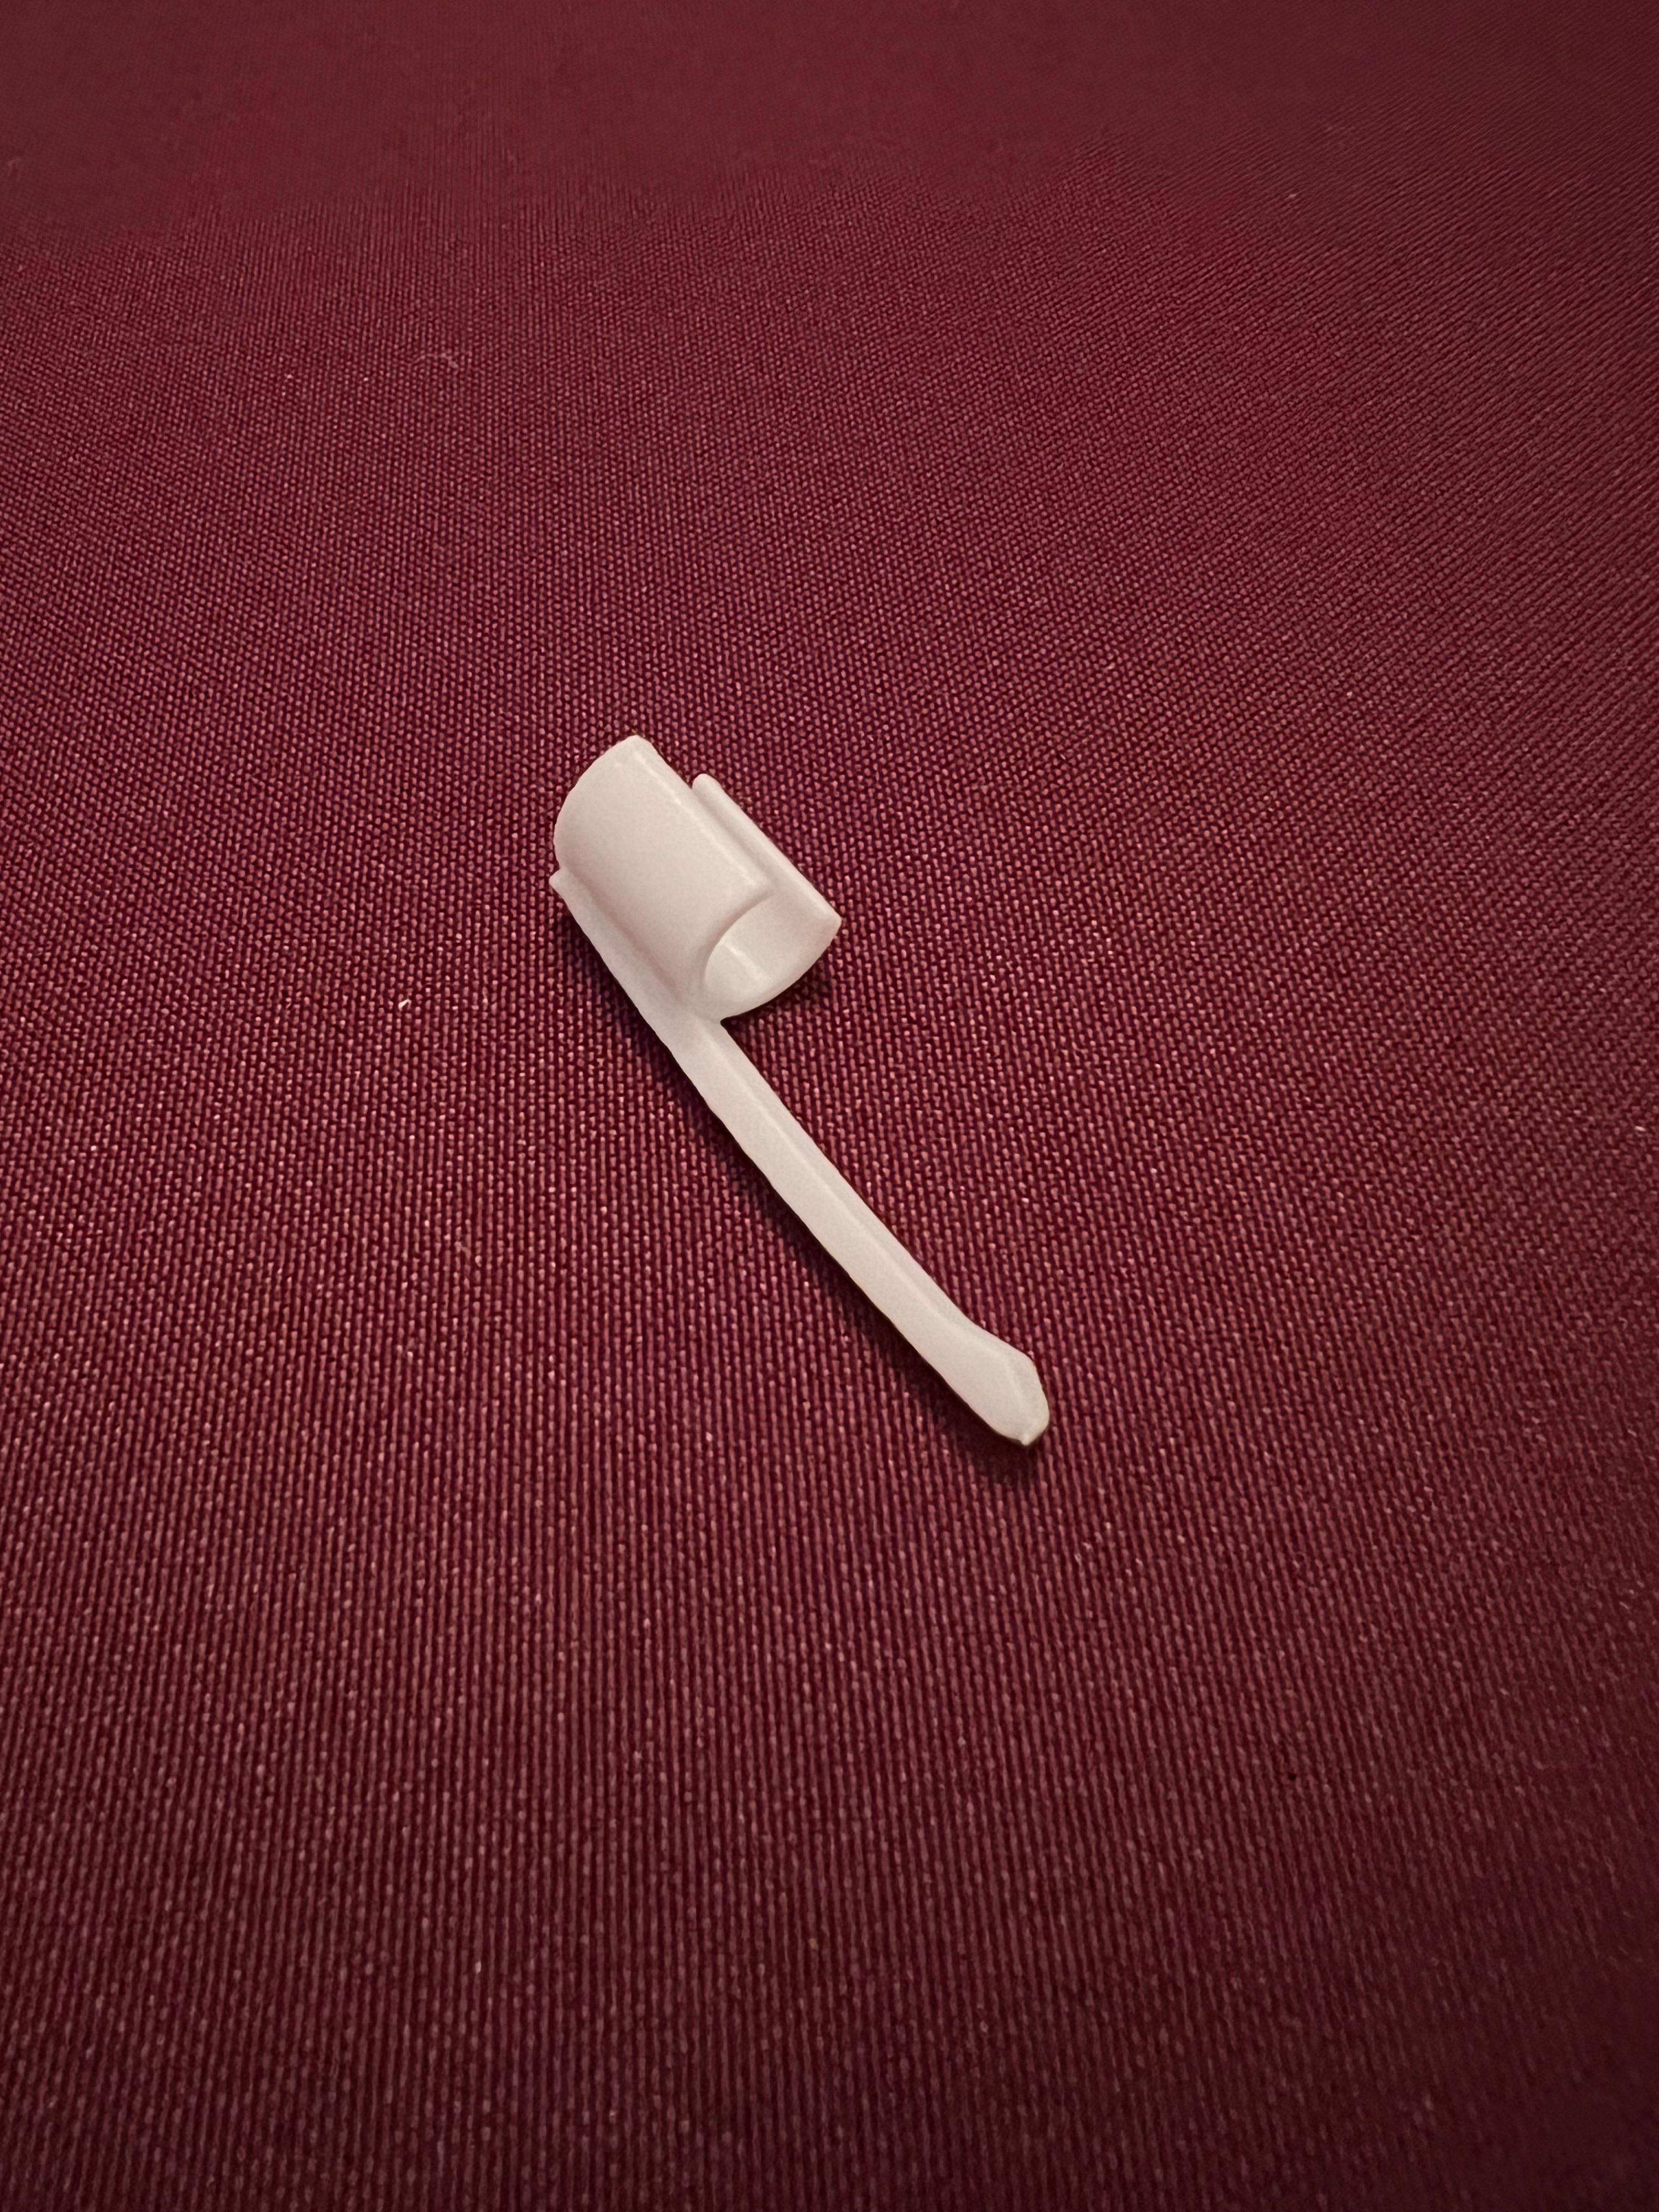 Apple Pen Clip.stl 3d model